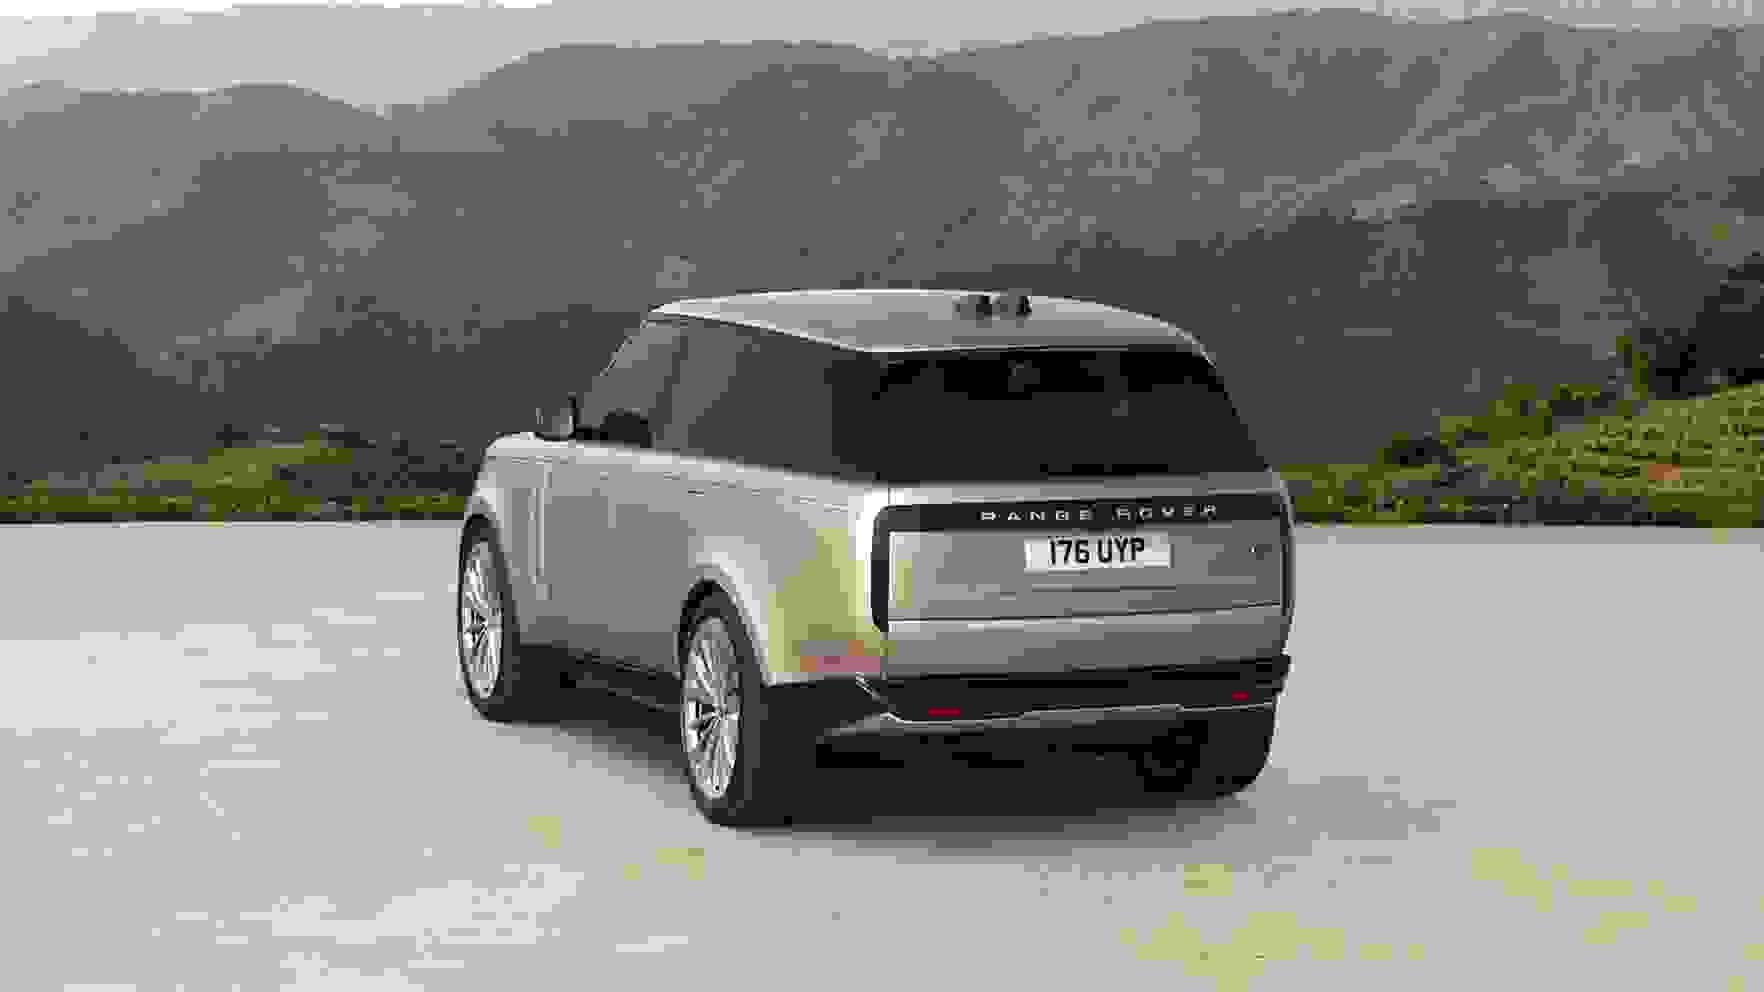 New Range Rover